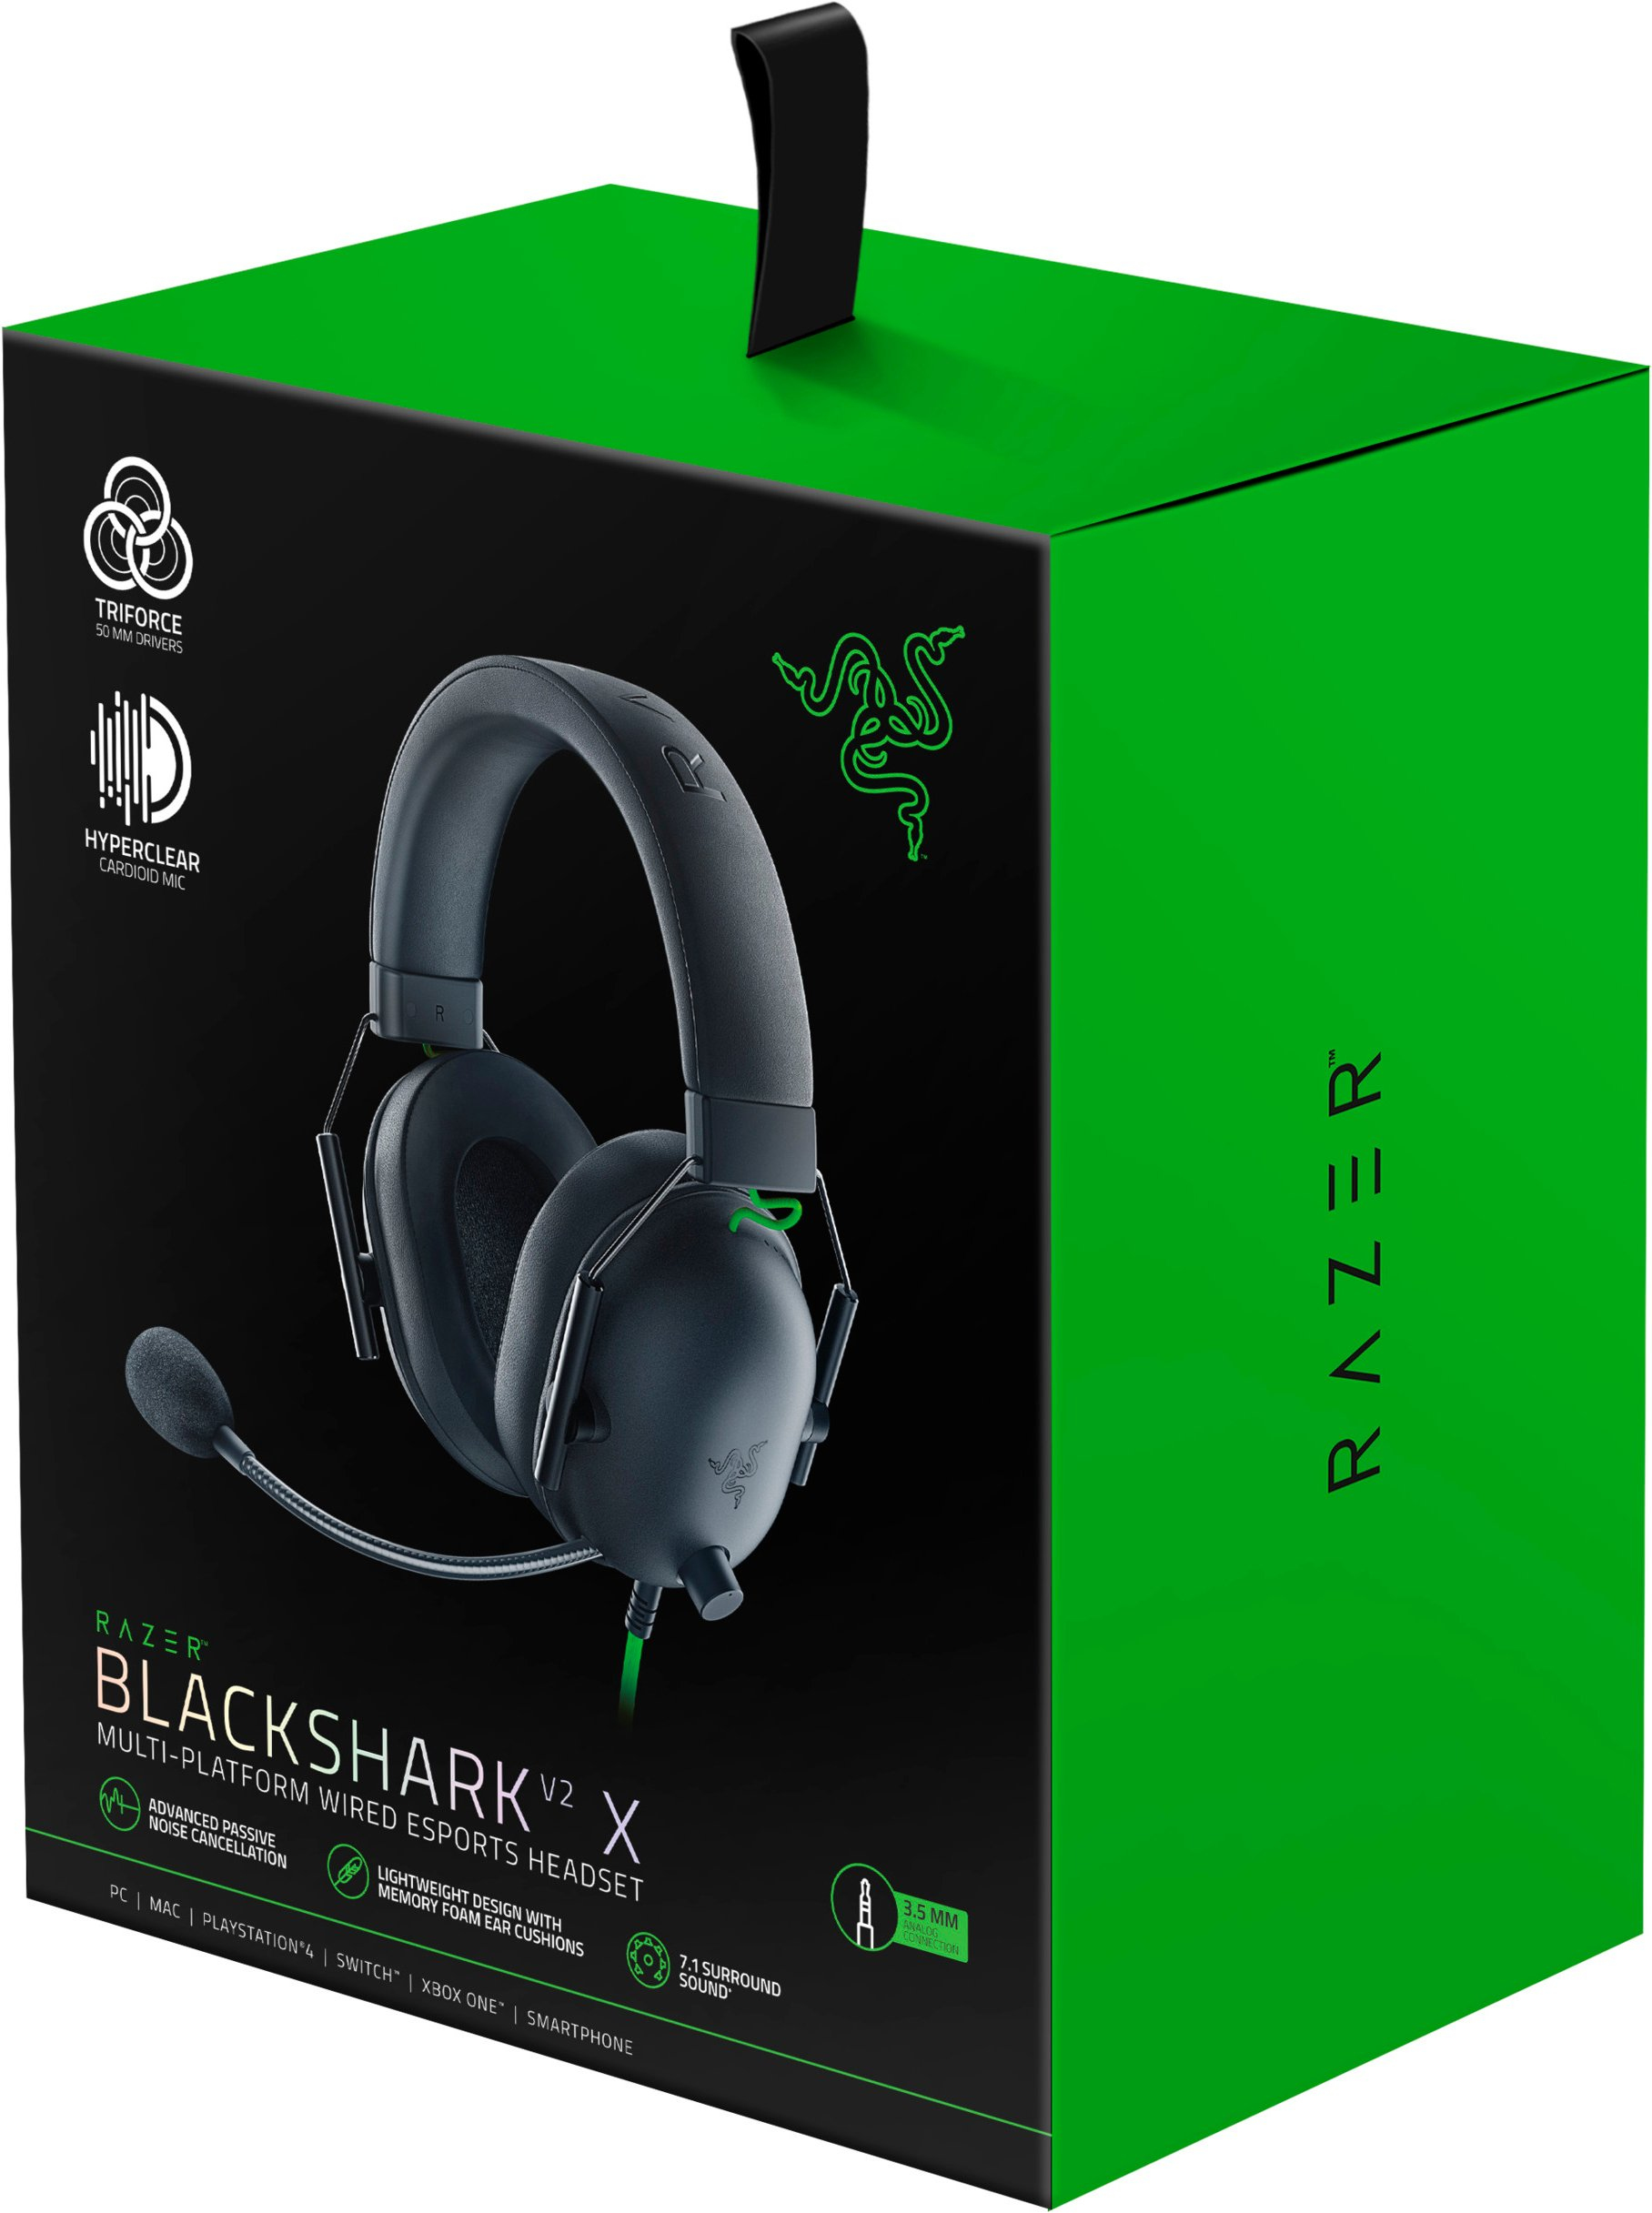 Razer blackshark v2 x headset